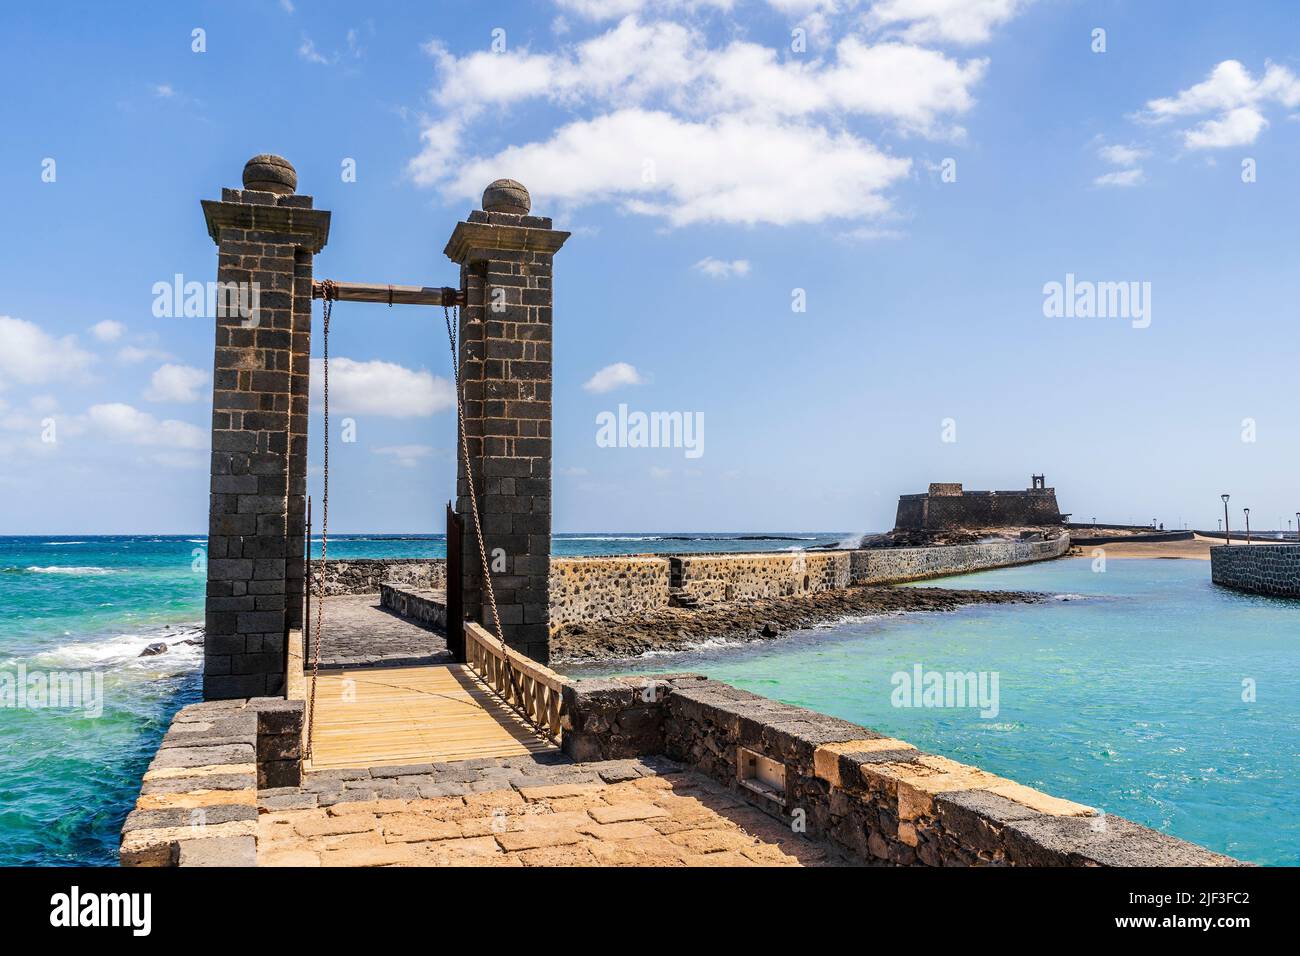 Histórico Castillo de San Gabriel con el Puente de las Pelotas que conduce a él, Arrecife, Lanzarote, Islas Canarias, España Foto de stock